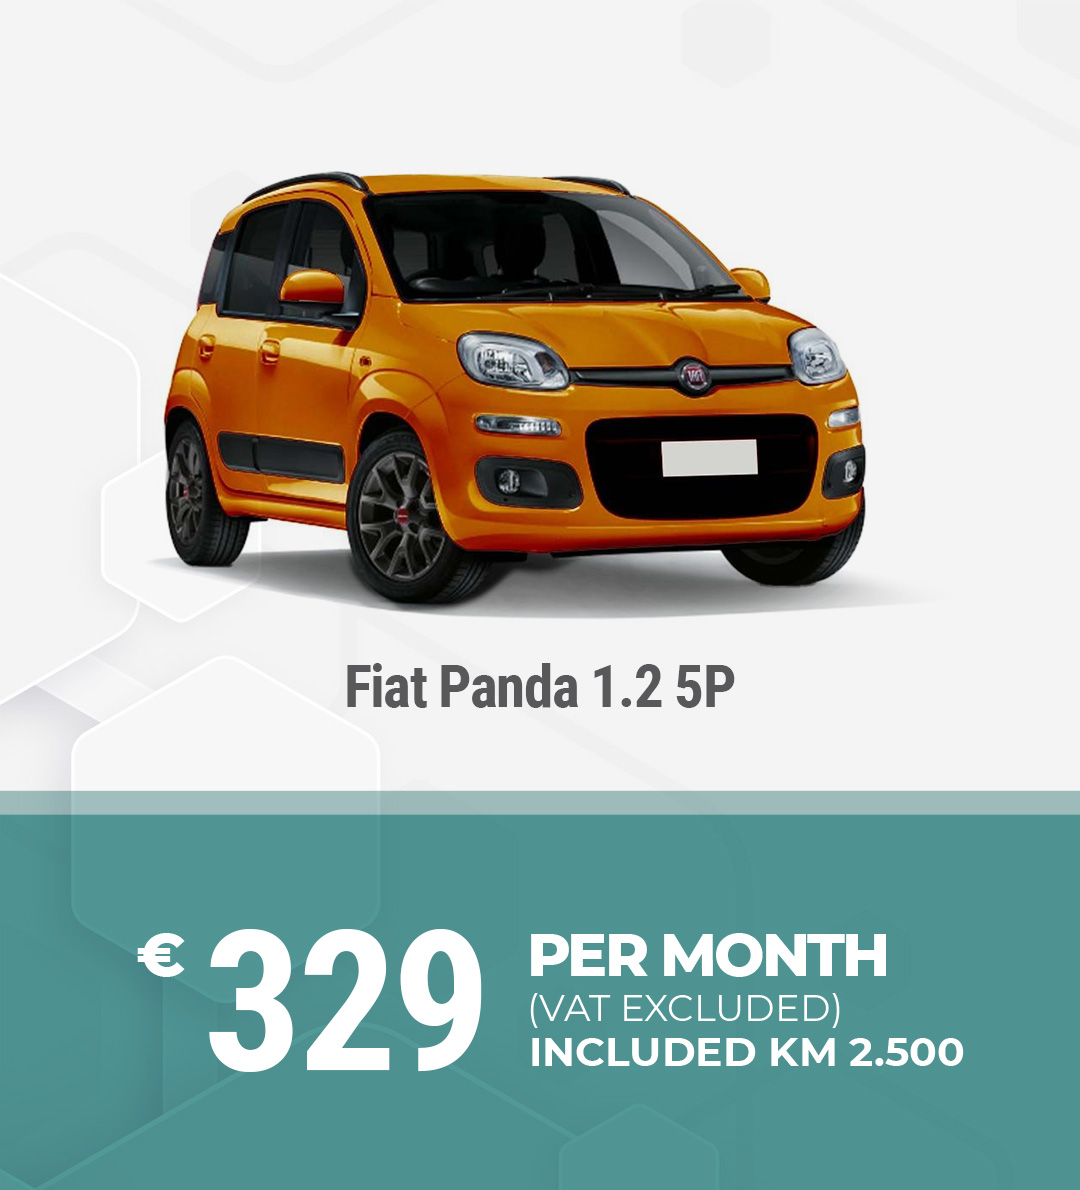 Medium term rental Fiat Panda